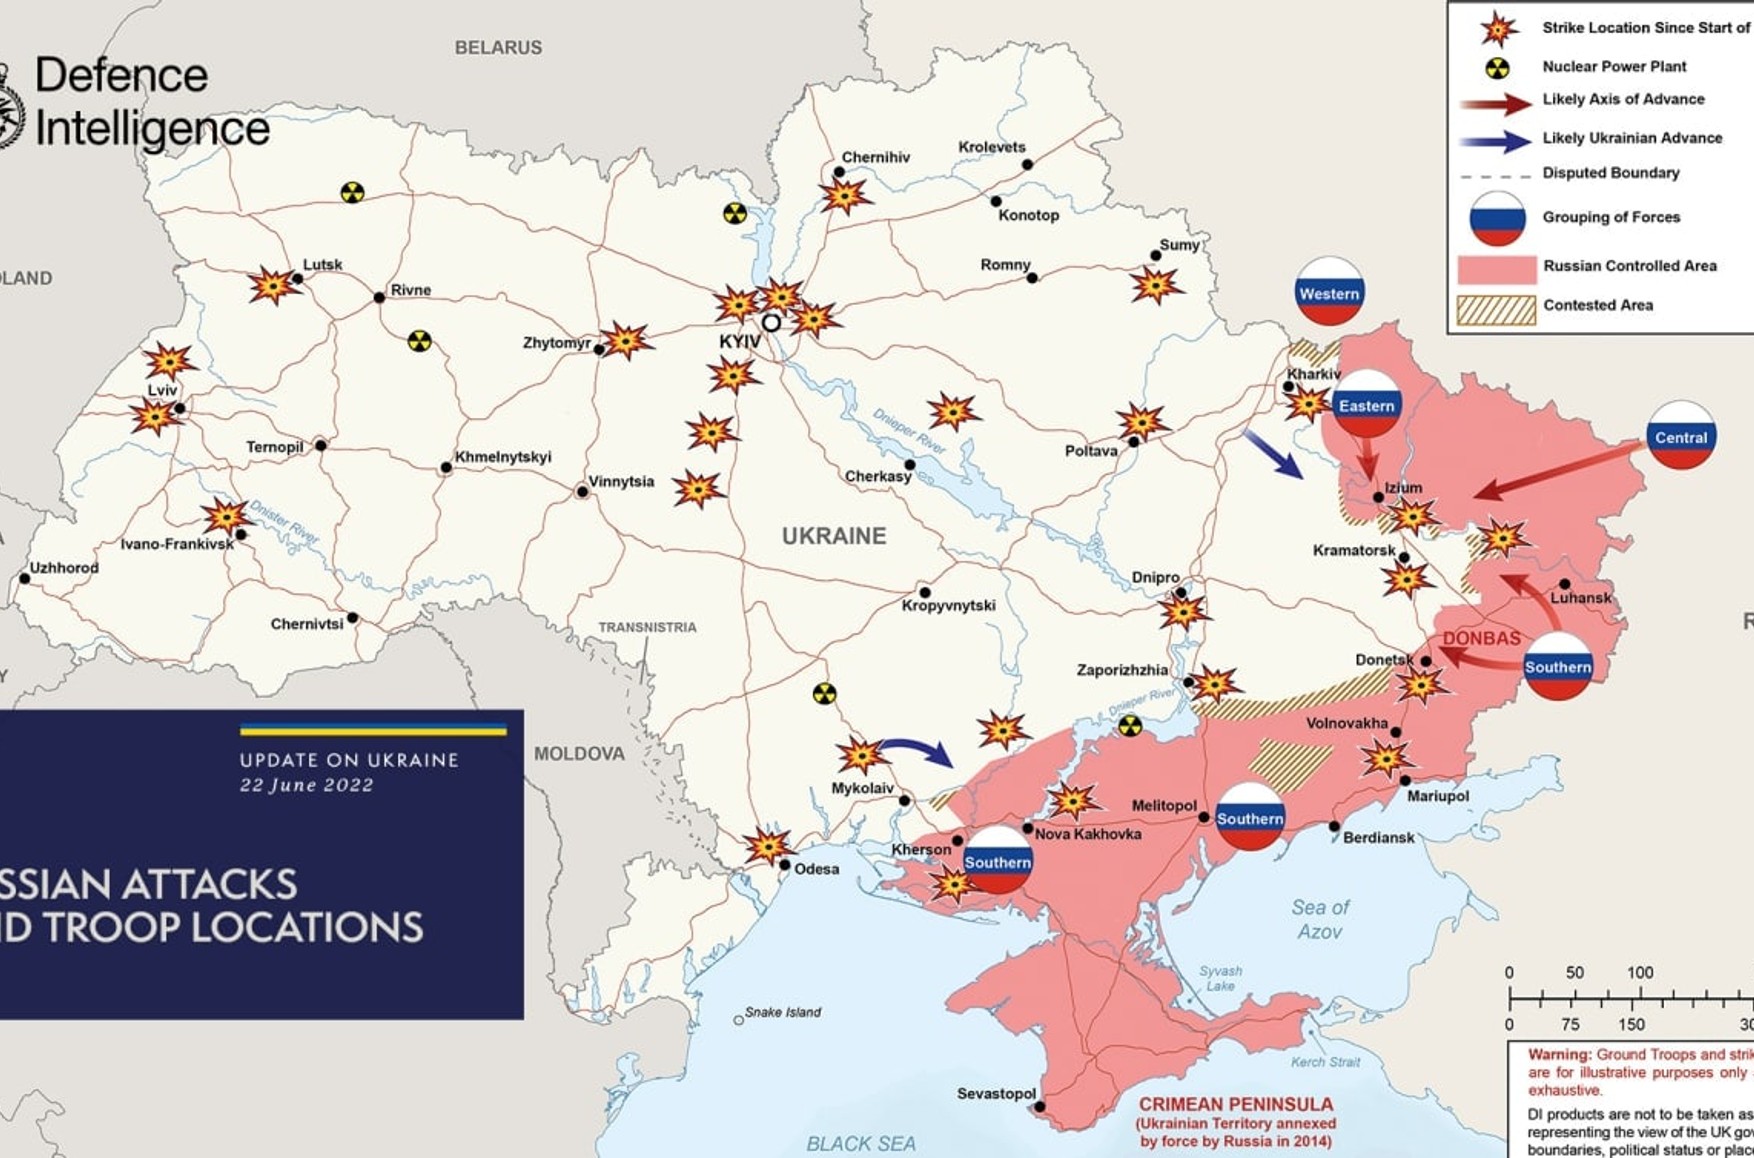 В районе Запорожья и Херсоне ужесточаются бои, следует из карты Минобороны Британии. В Украине эти данные опровергают